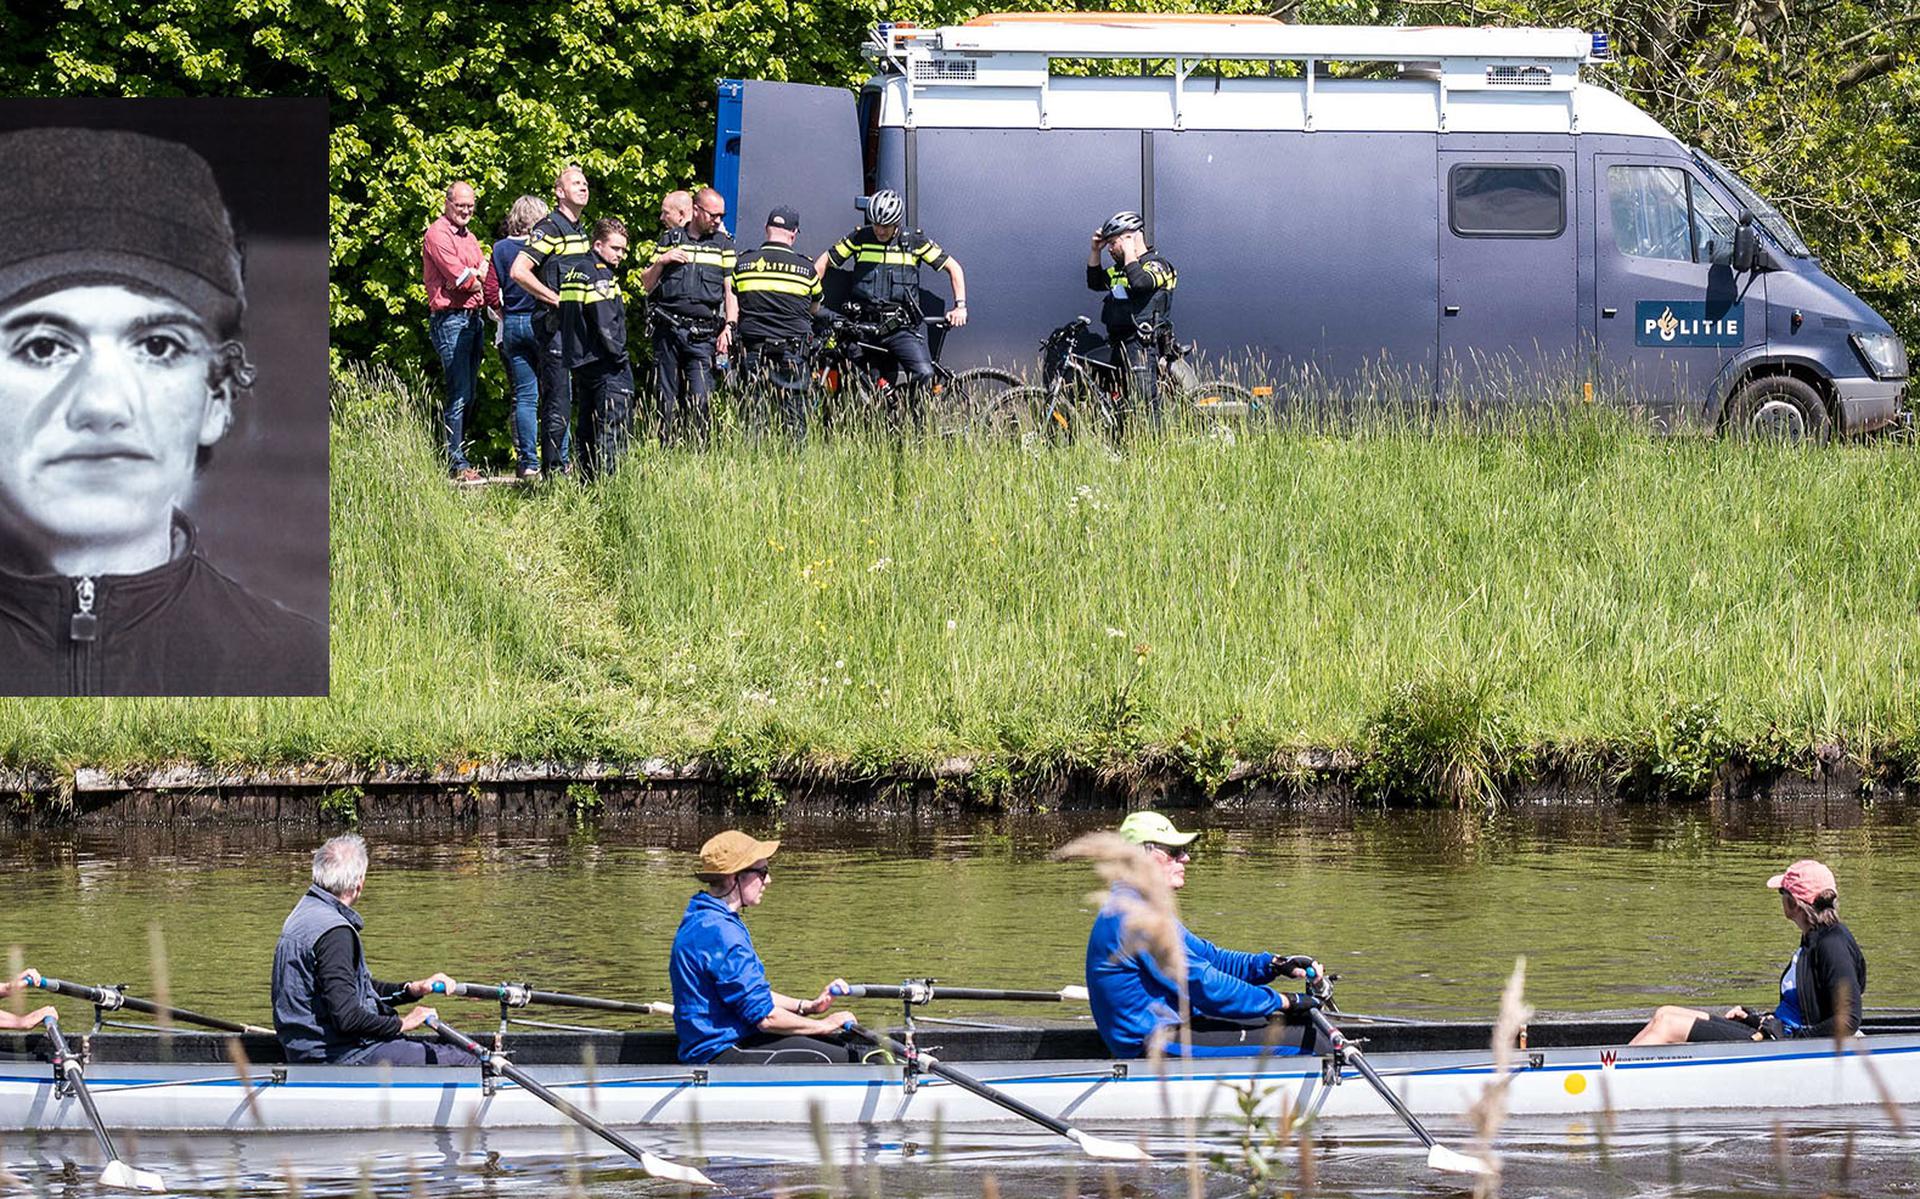 Compositietekening van de verdachte van het dodelijke steekincident in Groningen. Op de foto is de politie bezig met het onderzoek. Foto: ProNews, illustratie: Politie Groningen